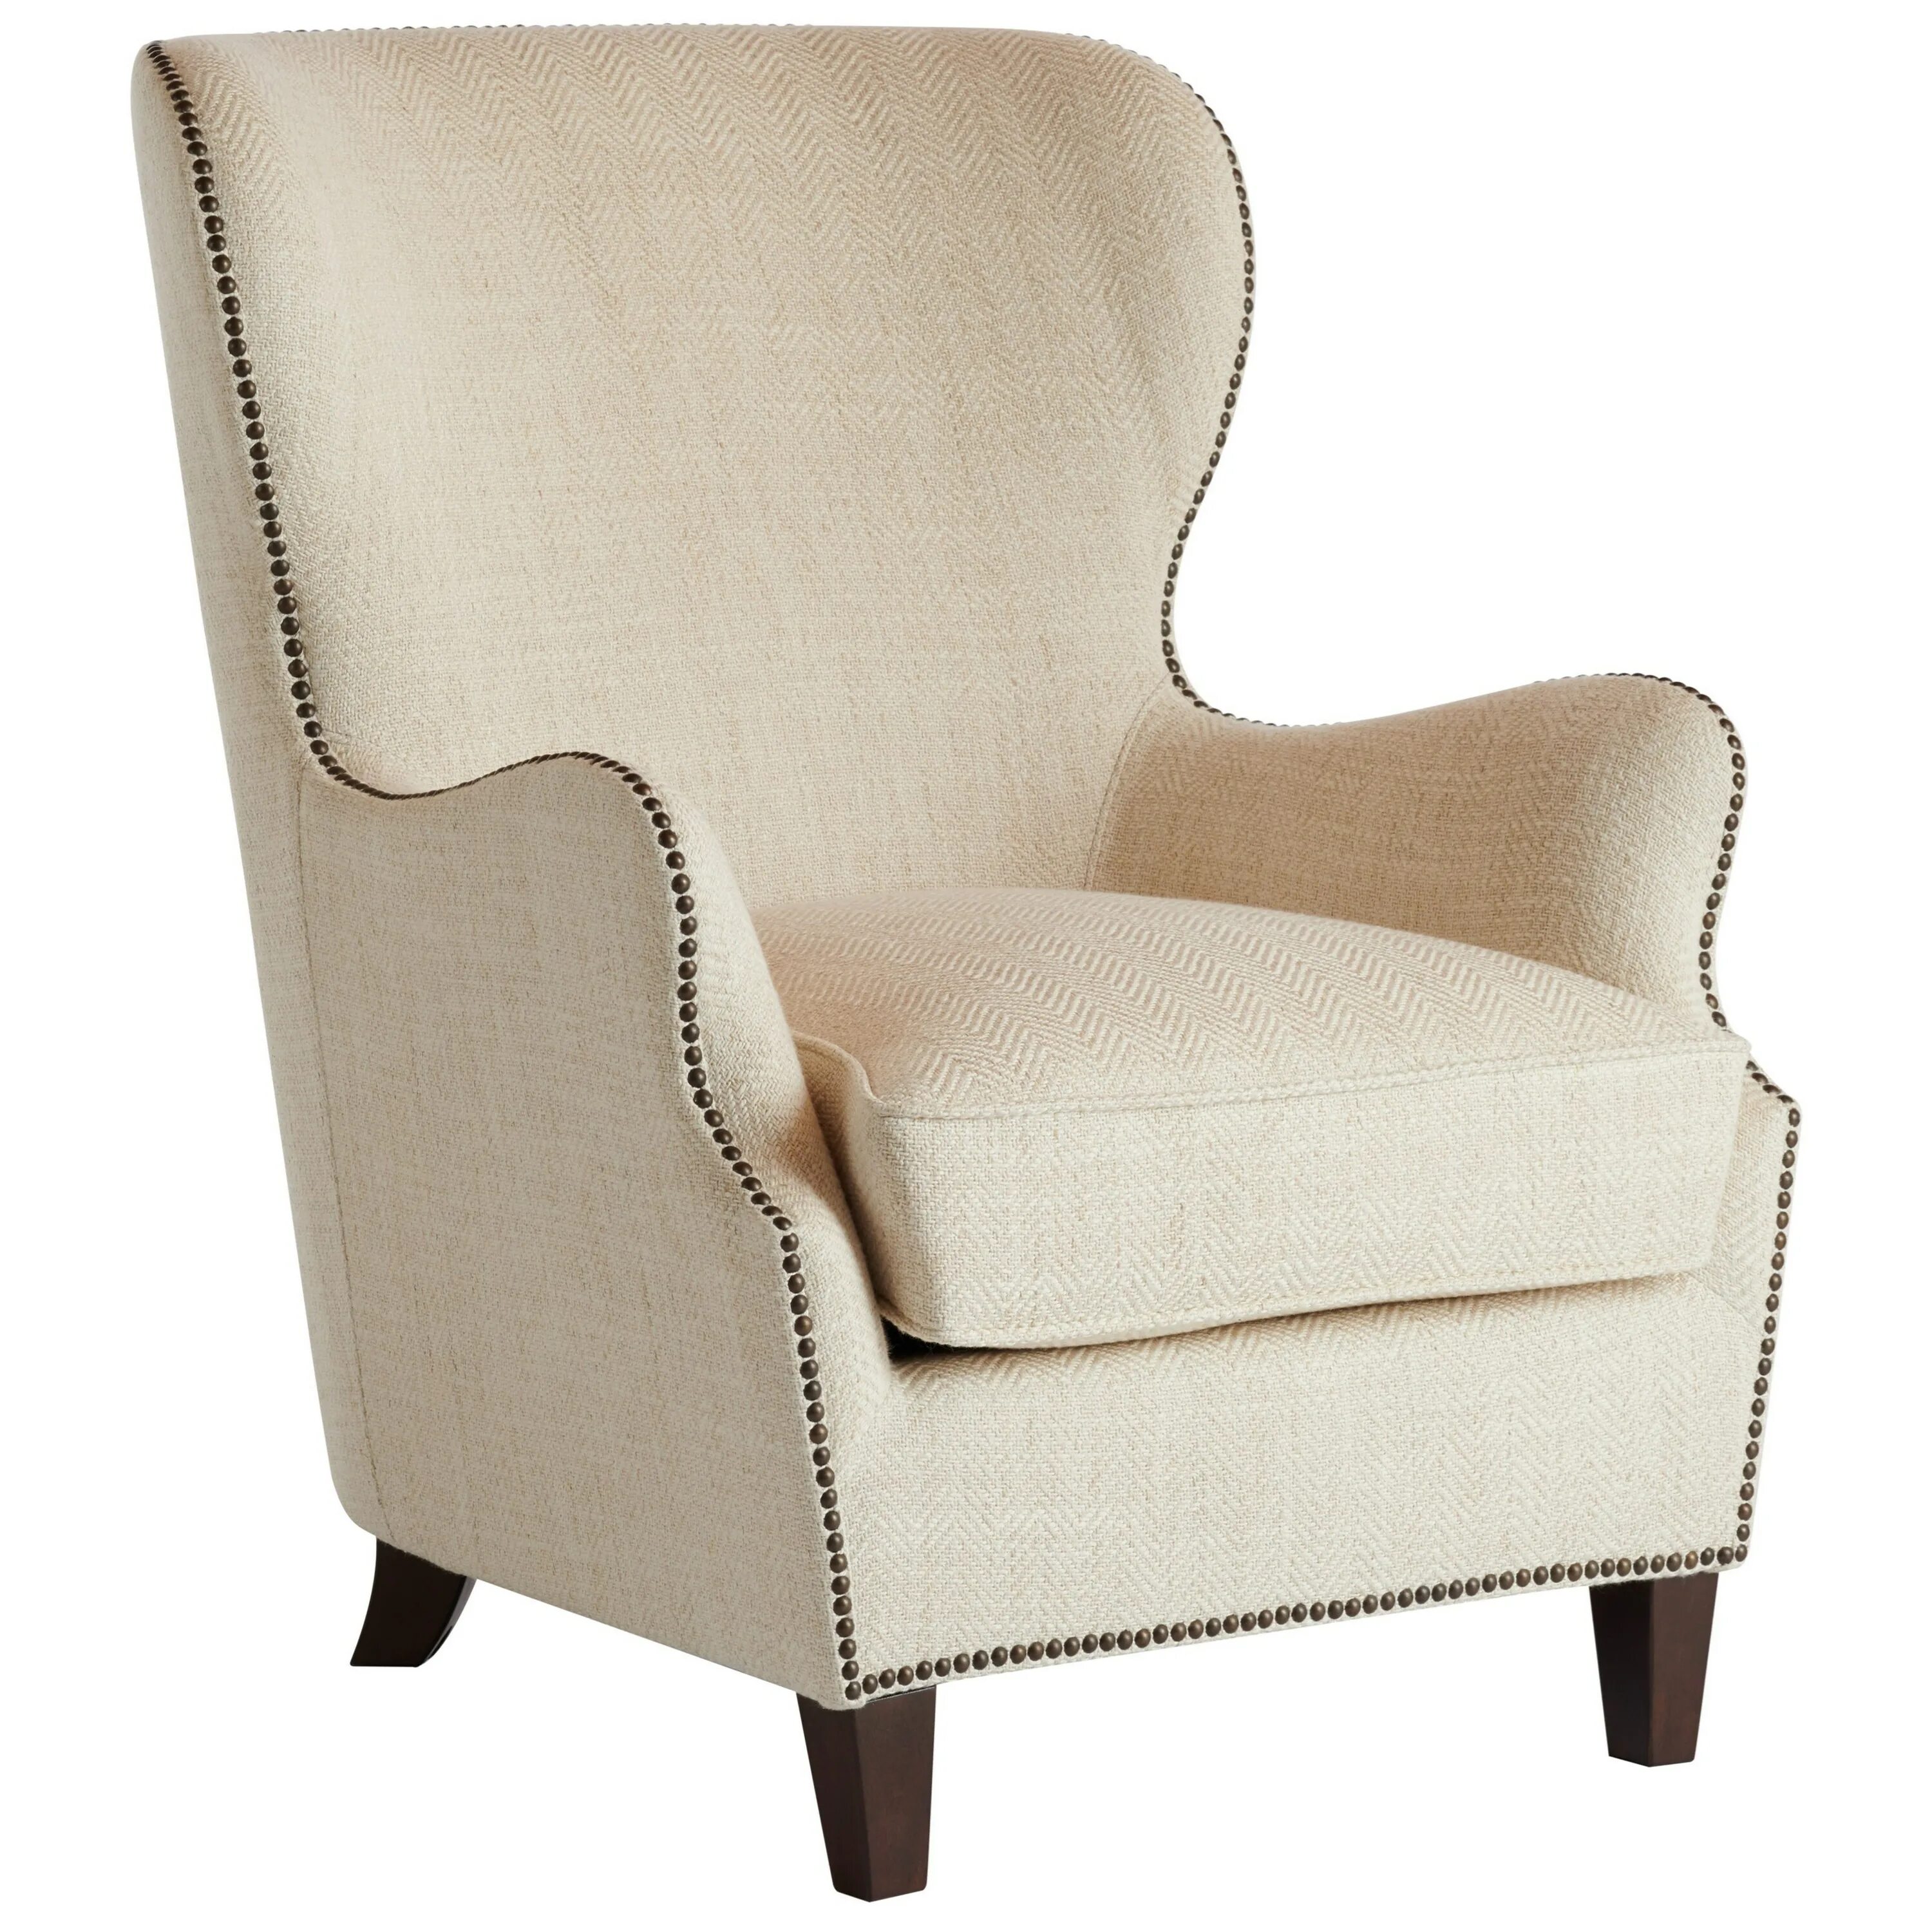 Кресло Лидс XH-6151. Кресло "Ivory White Leather". Кресло с широкими подлокотниками. Низкое кресло. Кресло слоновая кость